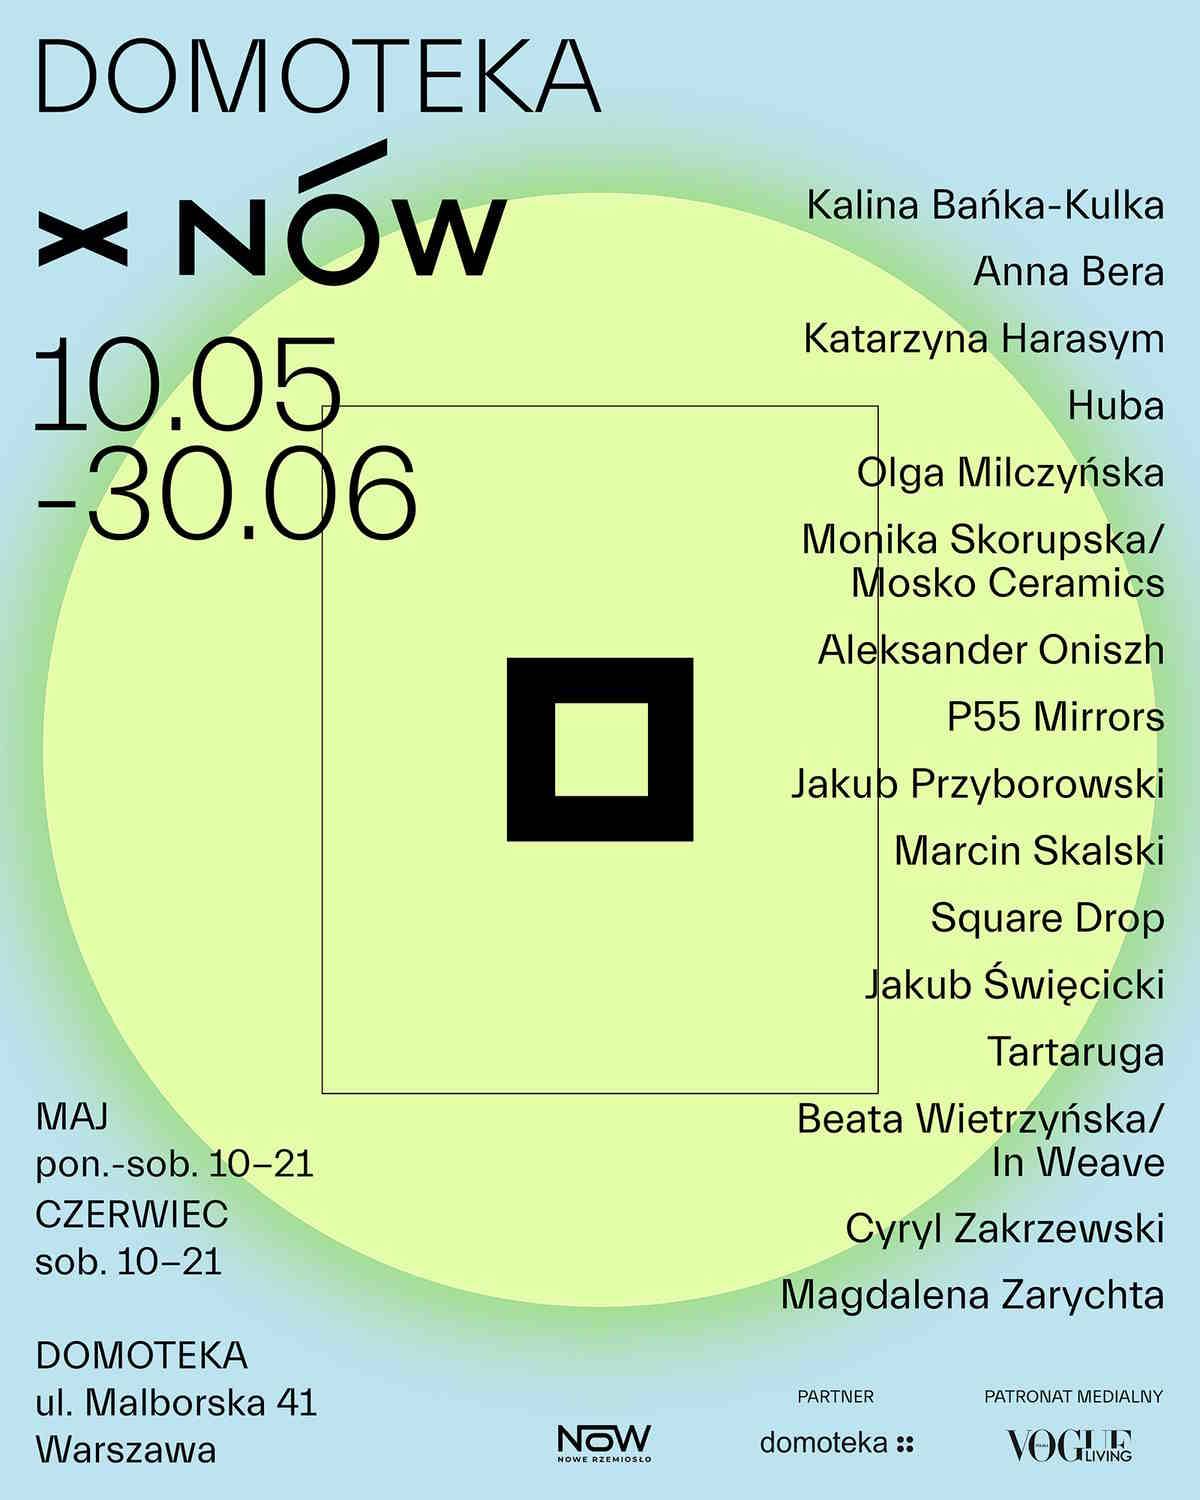 Stowarzyszenie Nów. Nowe Rzemiosło zaprasza na kolejną edycję projektu X NÓW, która tym razem gości w Centrum Designu Domoteka.